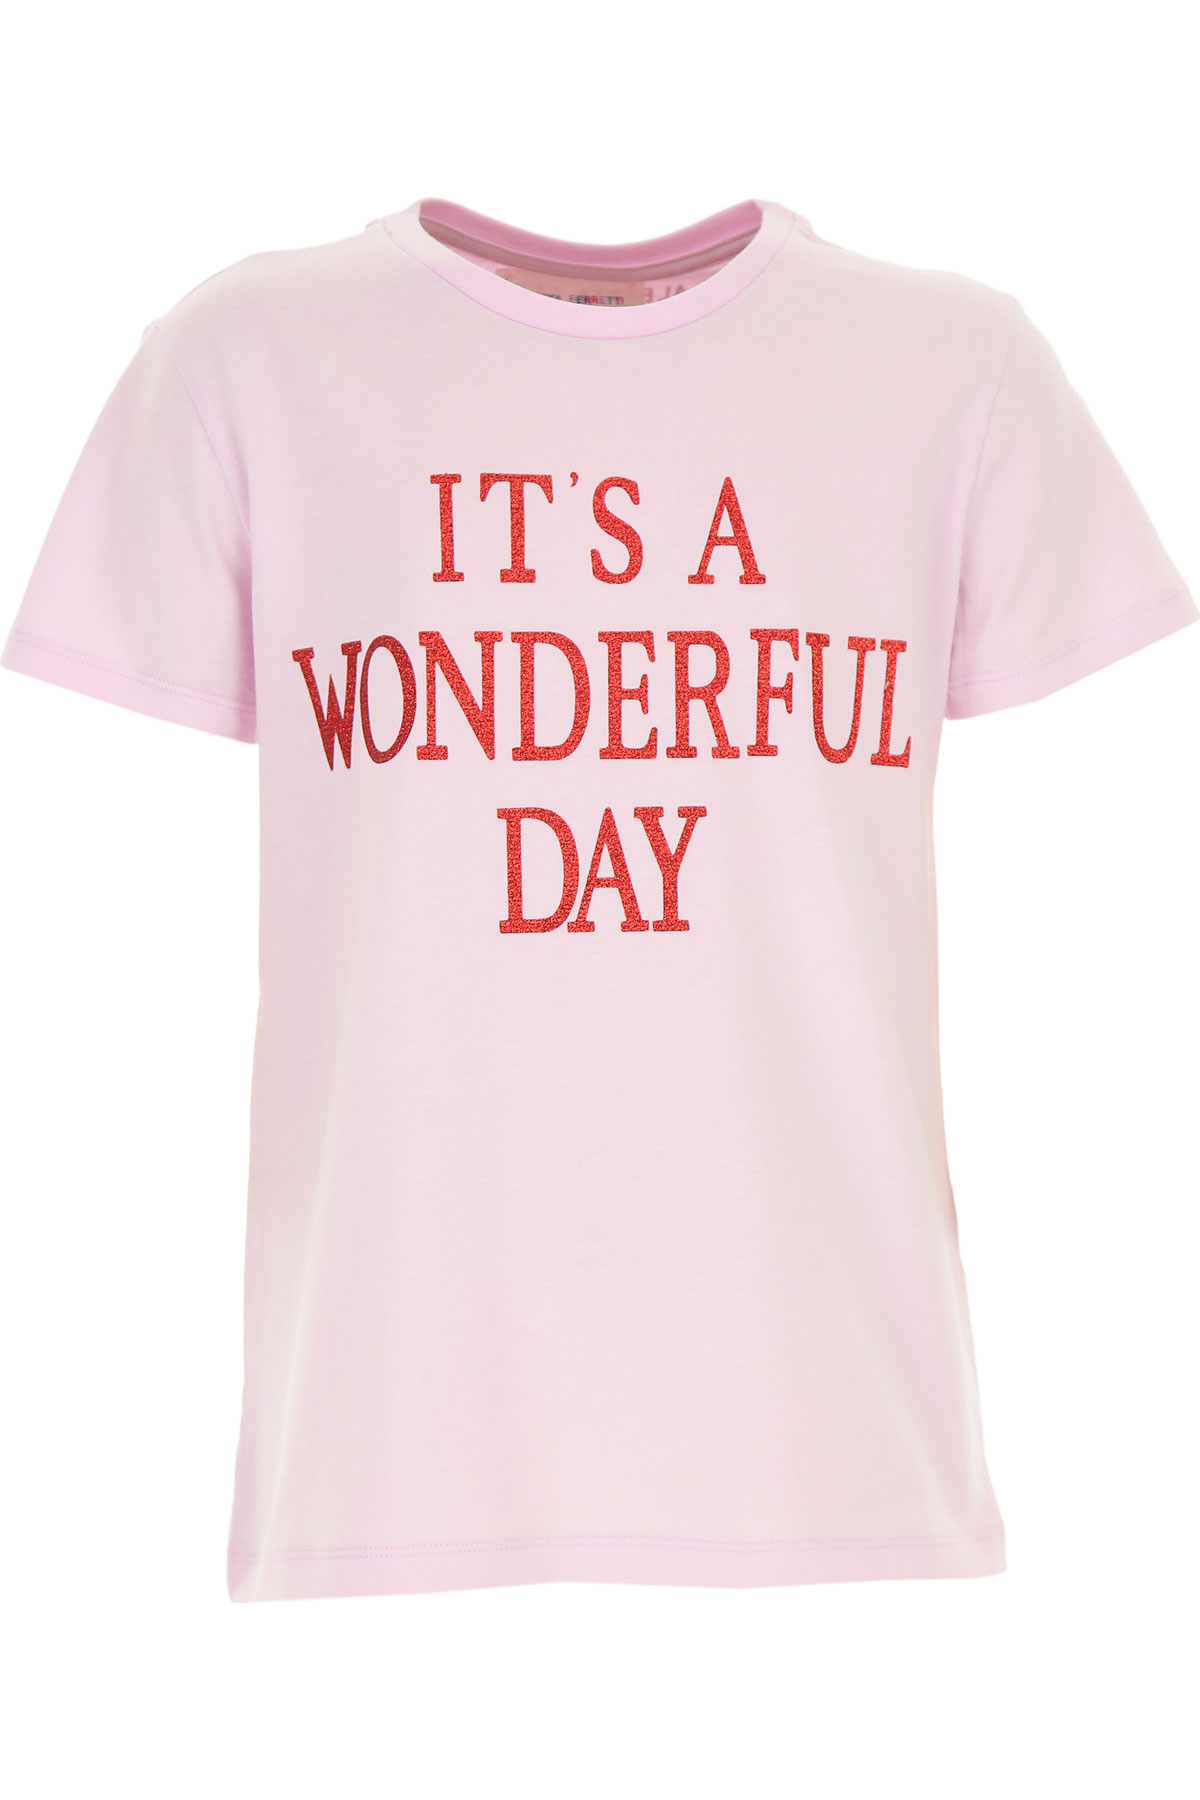 Alberta Ferretti Kinder T-Shirt für Mädchen Günstig im Sale, Baumwolle, 2017, 10Y 12Y 14Y 4Y 6Y 8Y